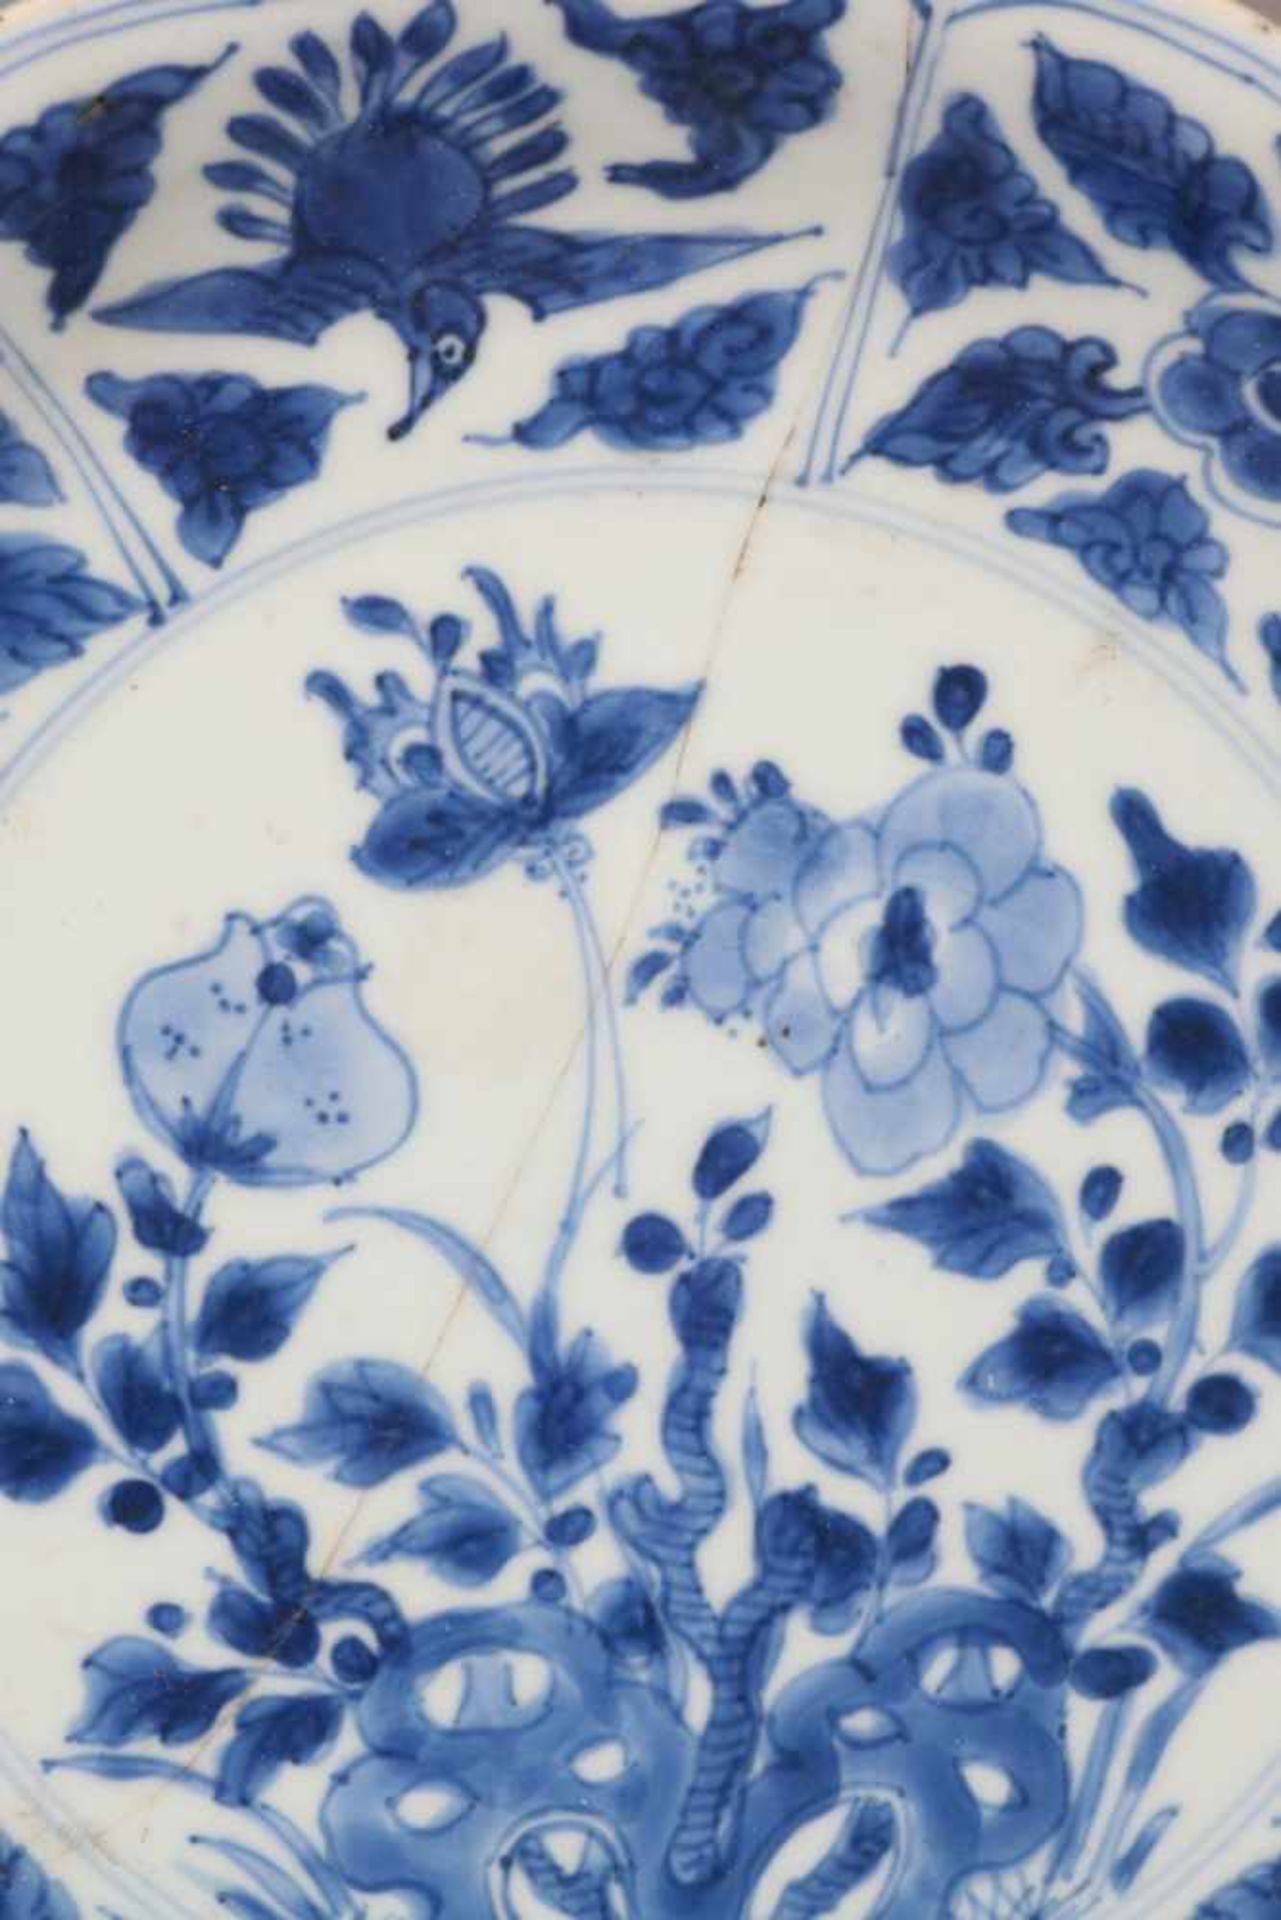 Paar chinesische TellerPorzellan, wohl 18. Jhdt., Blaumalerei, passige, leicht vertiefte Teller - Bild 5 aus 6